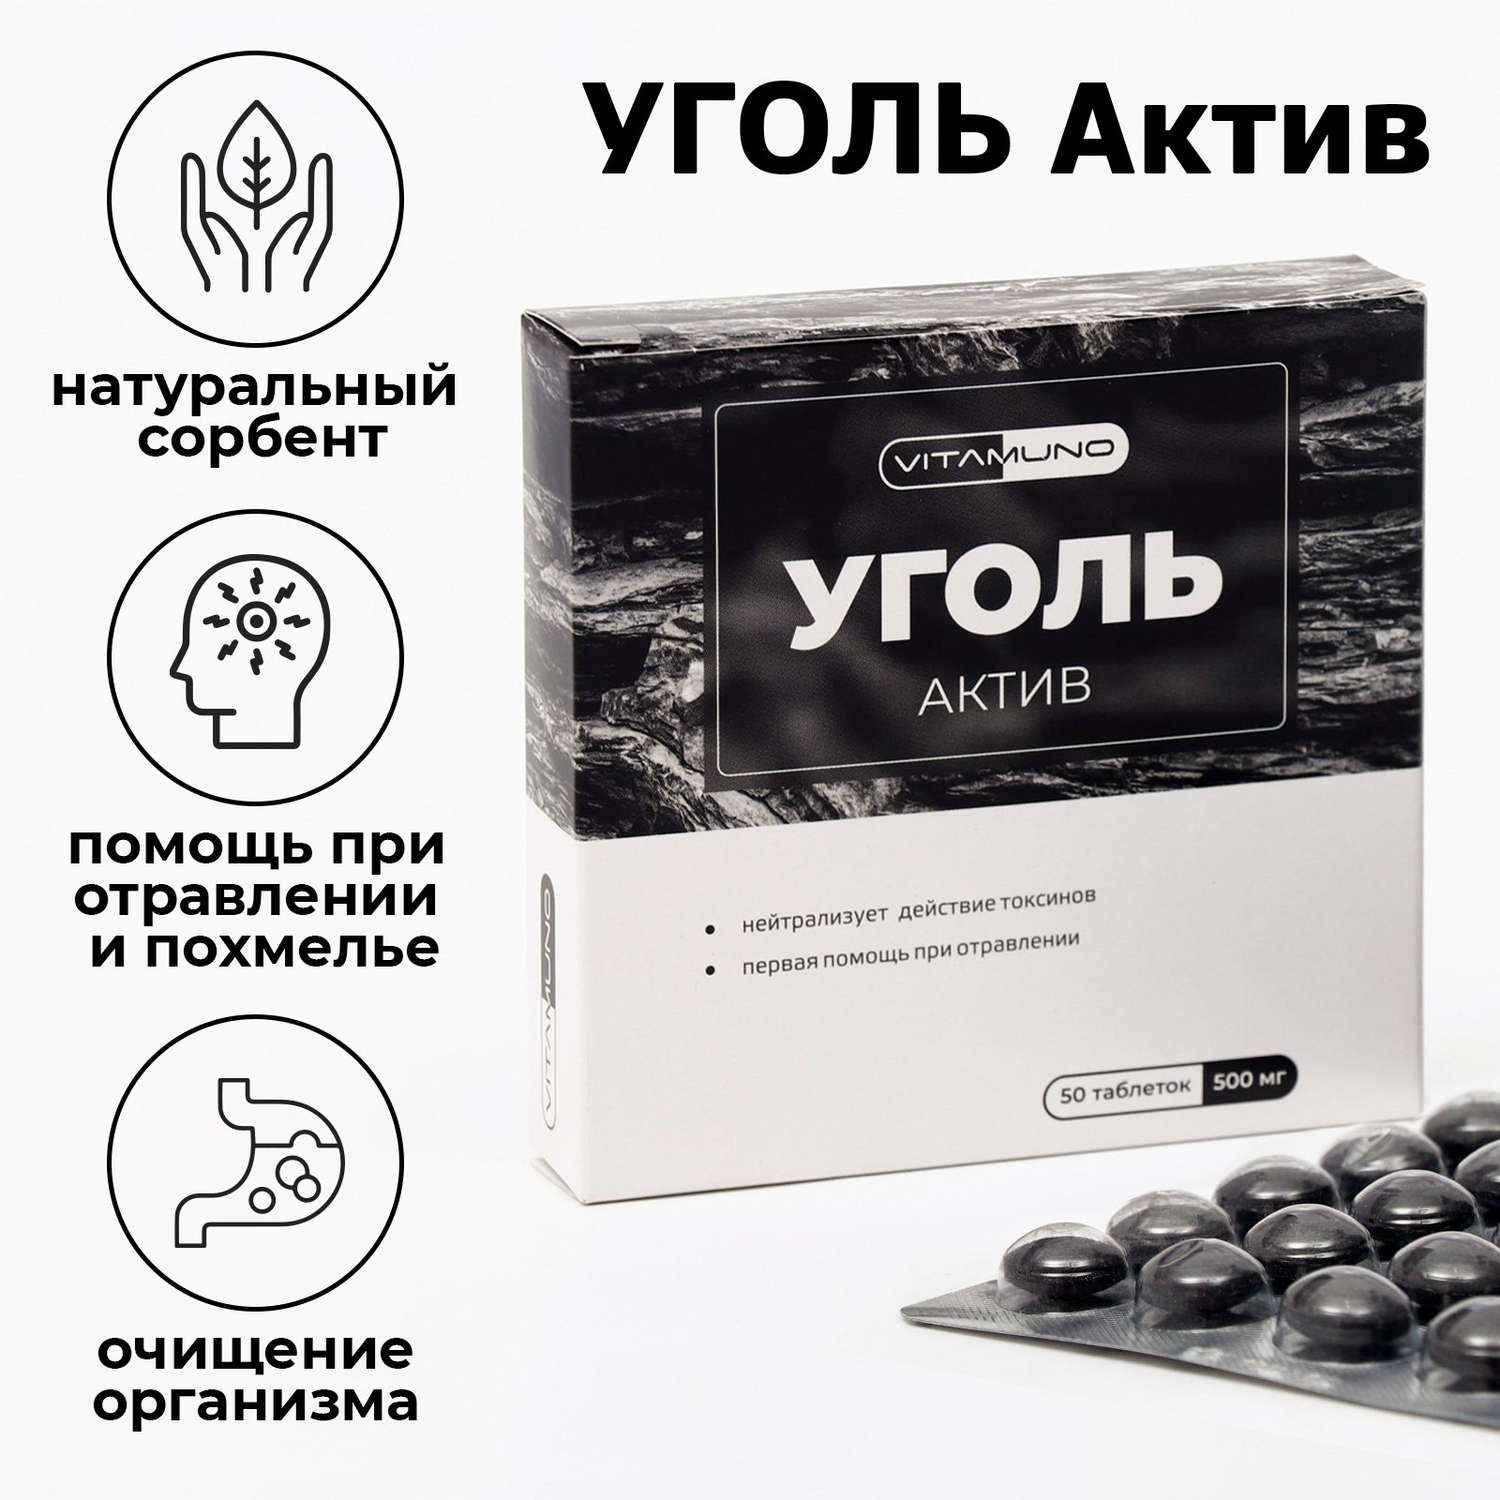 Уголь активированный Vitamuno абсорбирующий 50 таблеток по 500 мг - фото 4